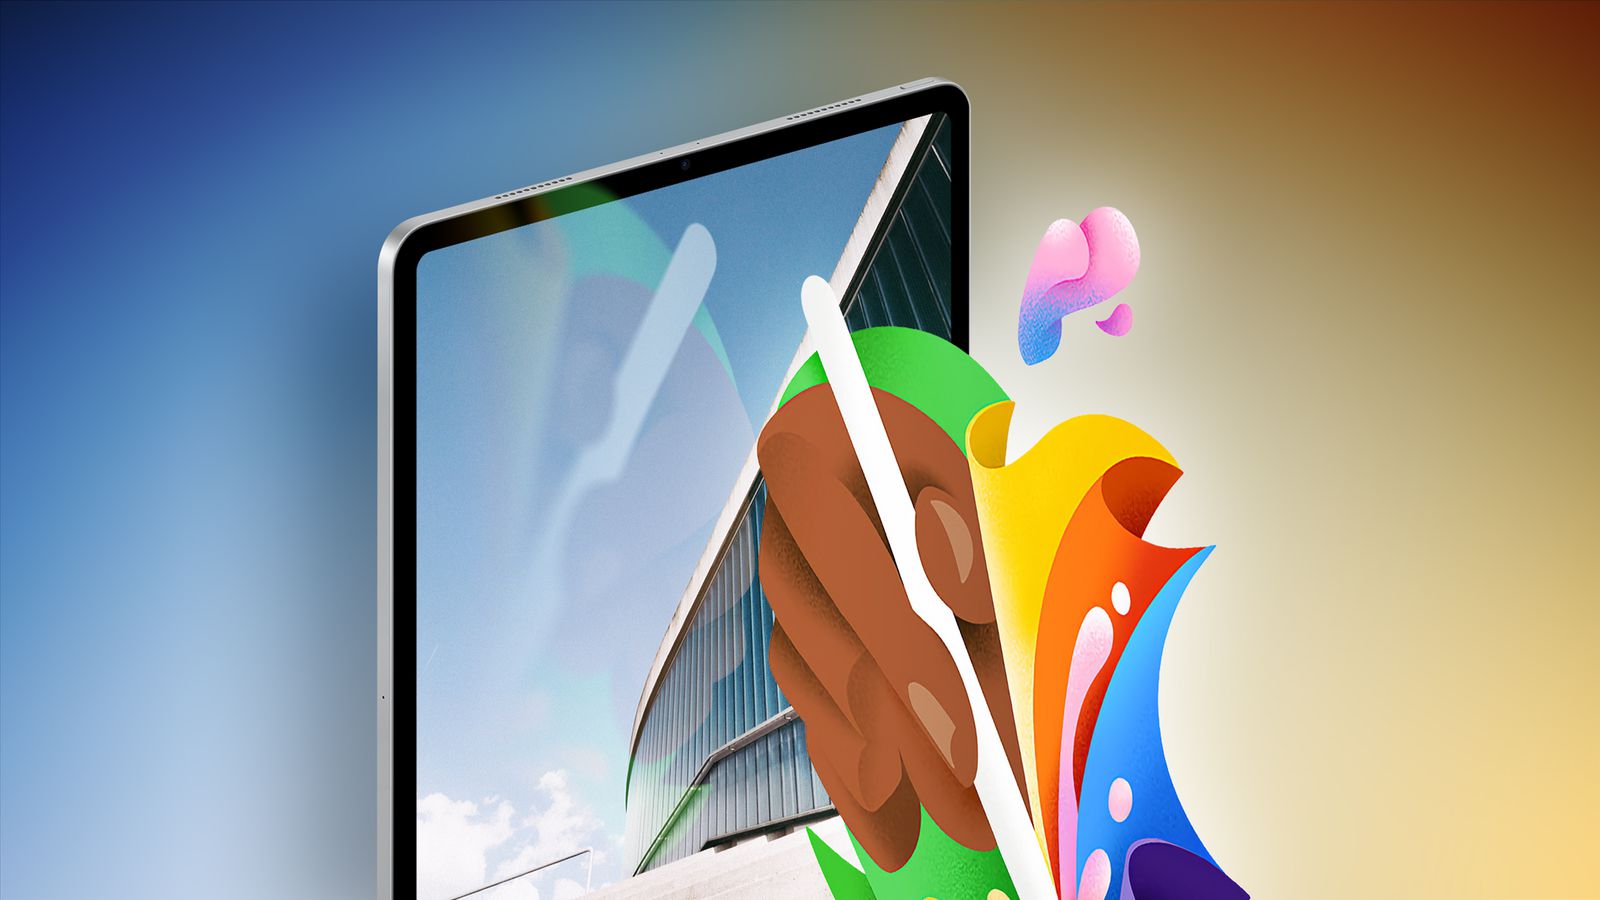 Desde iPhoneIslam.com, una tableta digital muestra arte abstracto vibrante usando un lápiz, contra el fondo borroso de un edificio moderno bajo un cielo despejado el 1 de mayo.